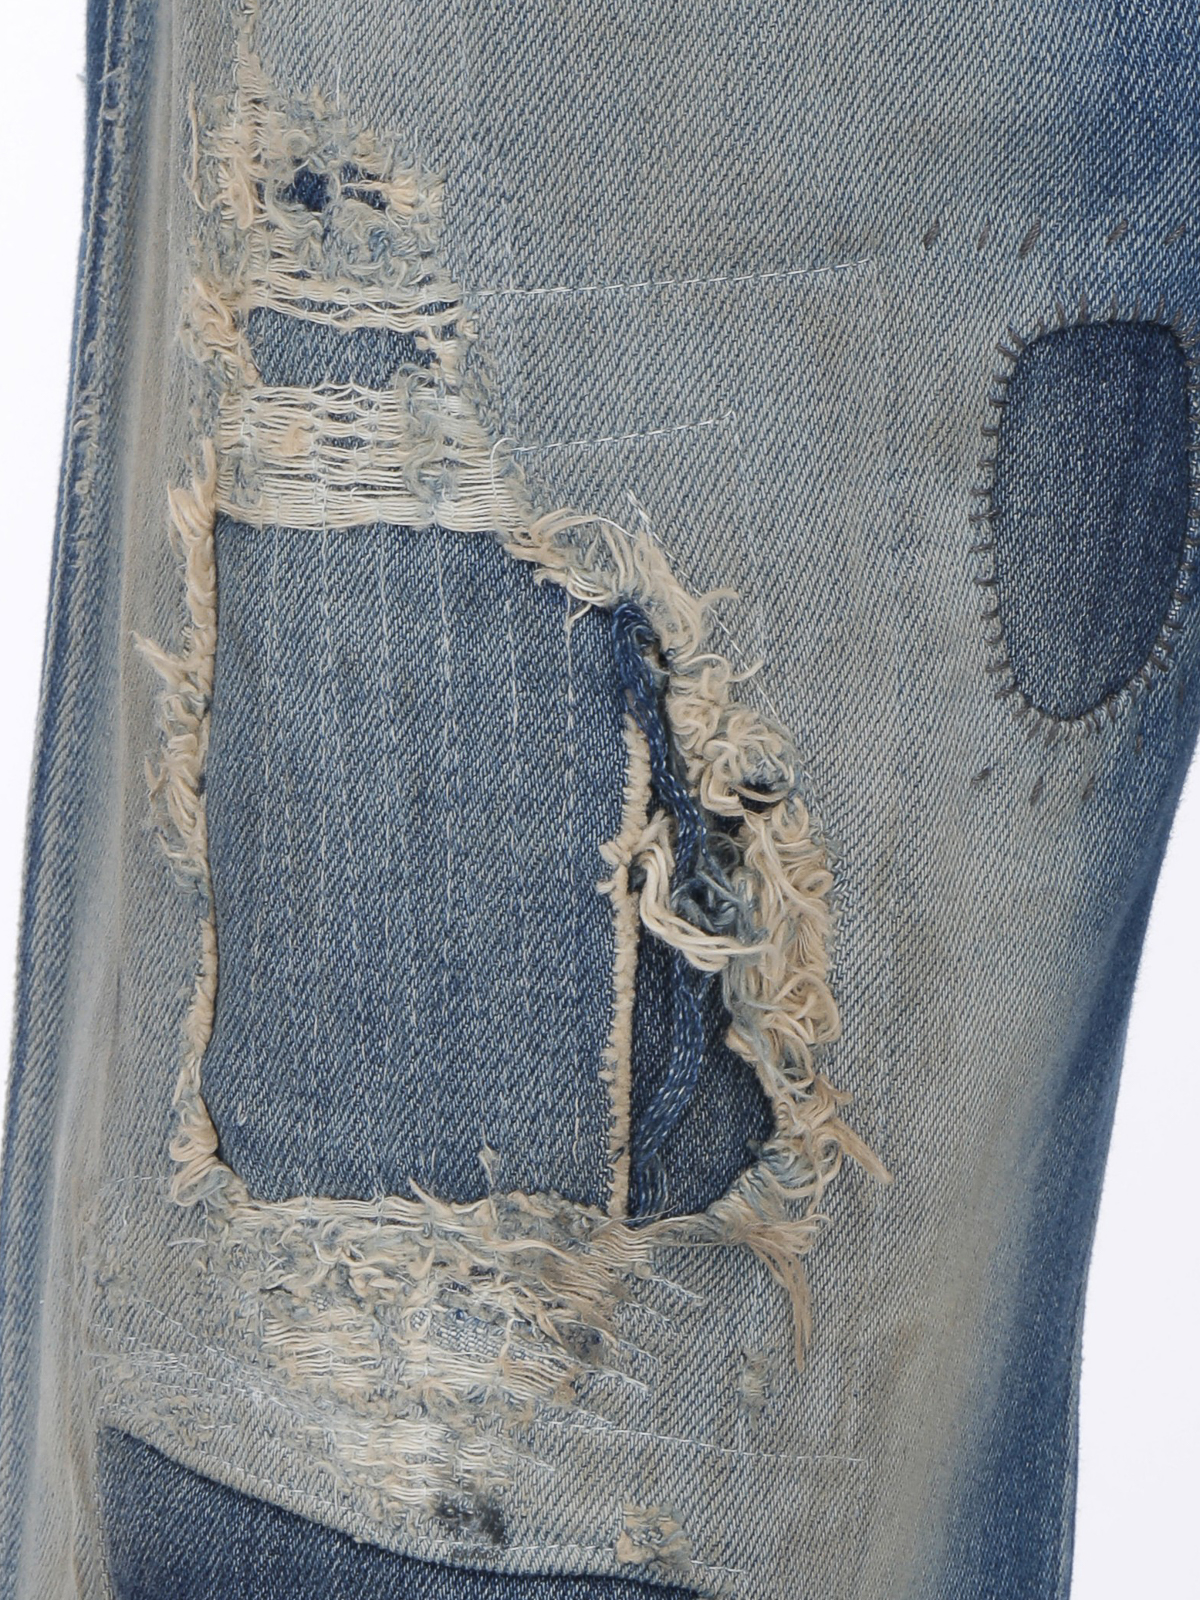 Flared jeans Maison Margiela - Destroyed details flared jeans ...